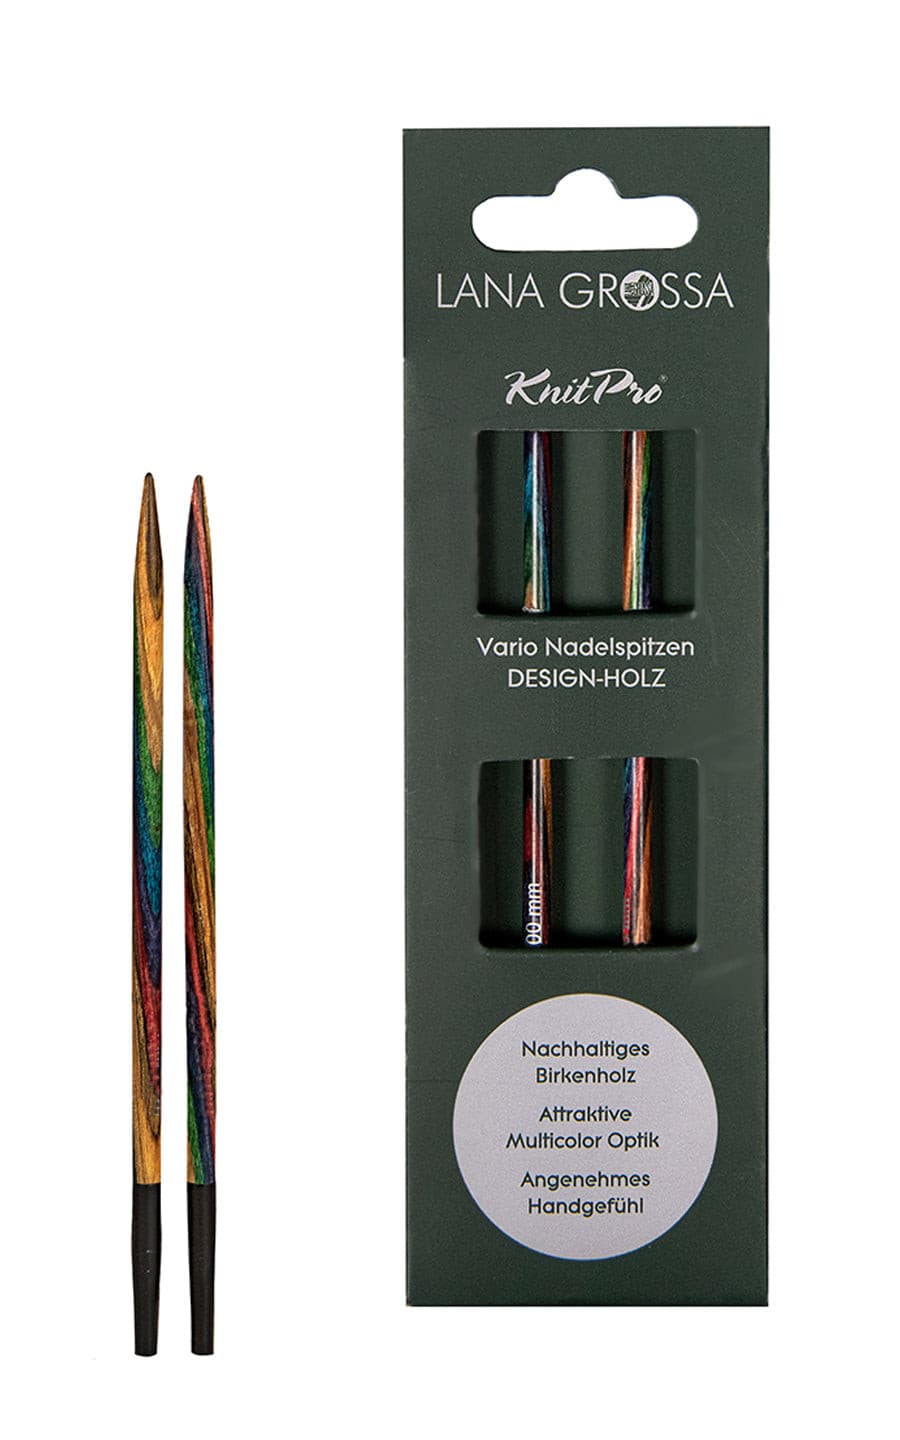 5,5 mm Nadelspitze Vario aus Holz - neue Verpackung von LANA GROSSA jetzt online kaufen bei OONIQUE